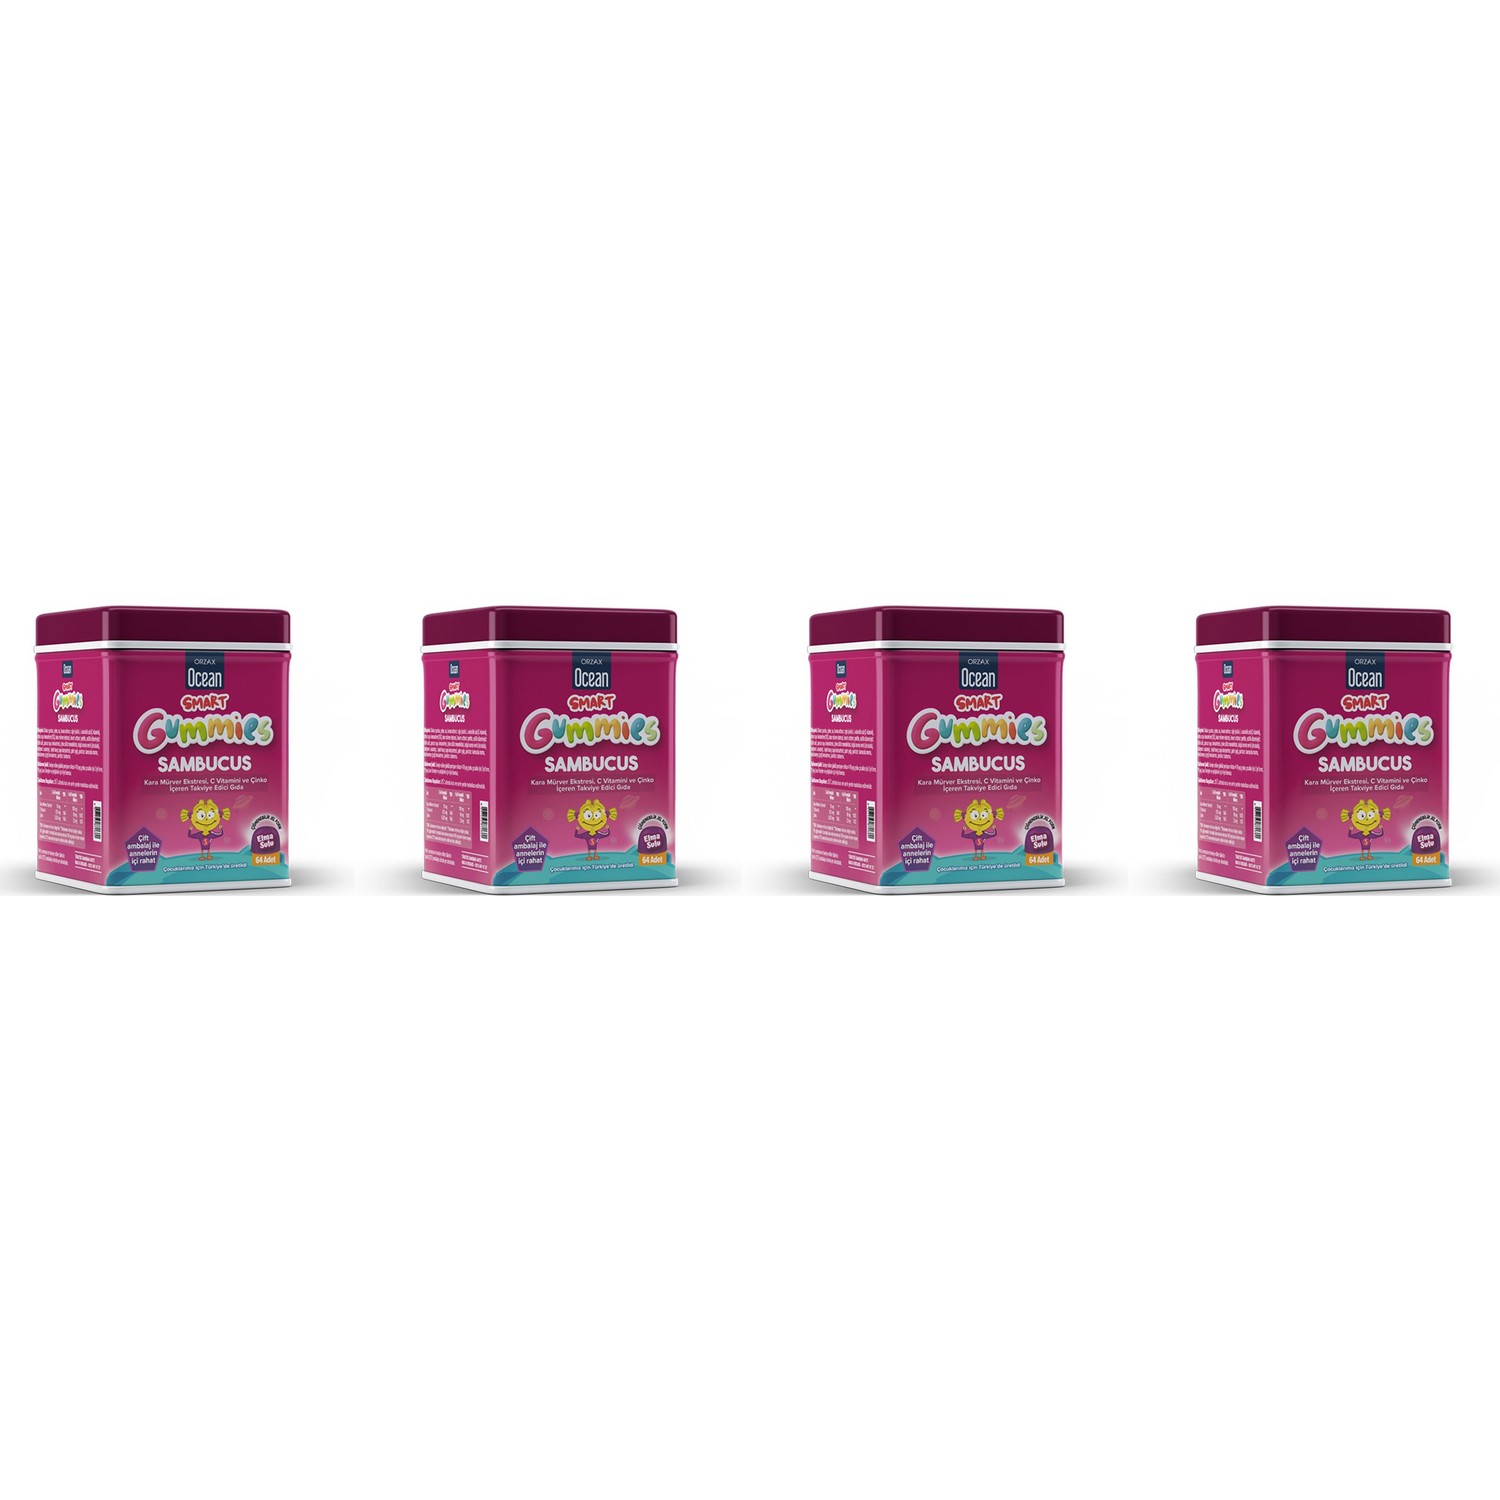 Мультивитамины Orzax Smart Gummies Sambucus, 4 упаковки по 64 таблетки